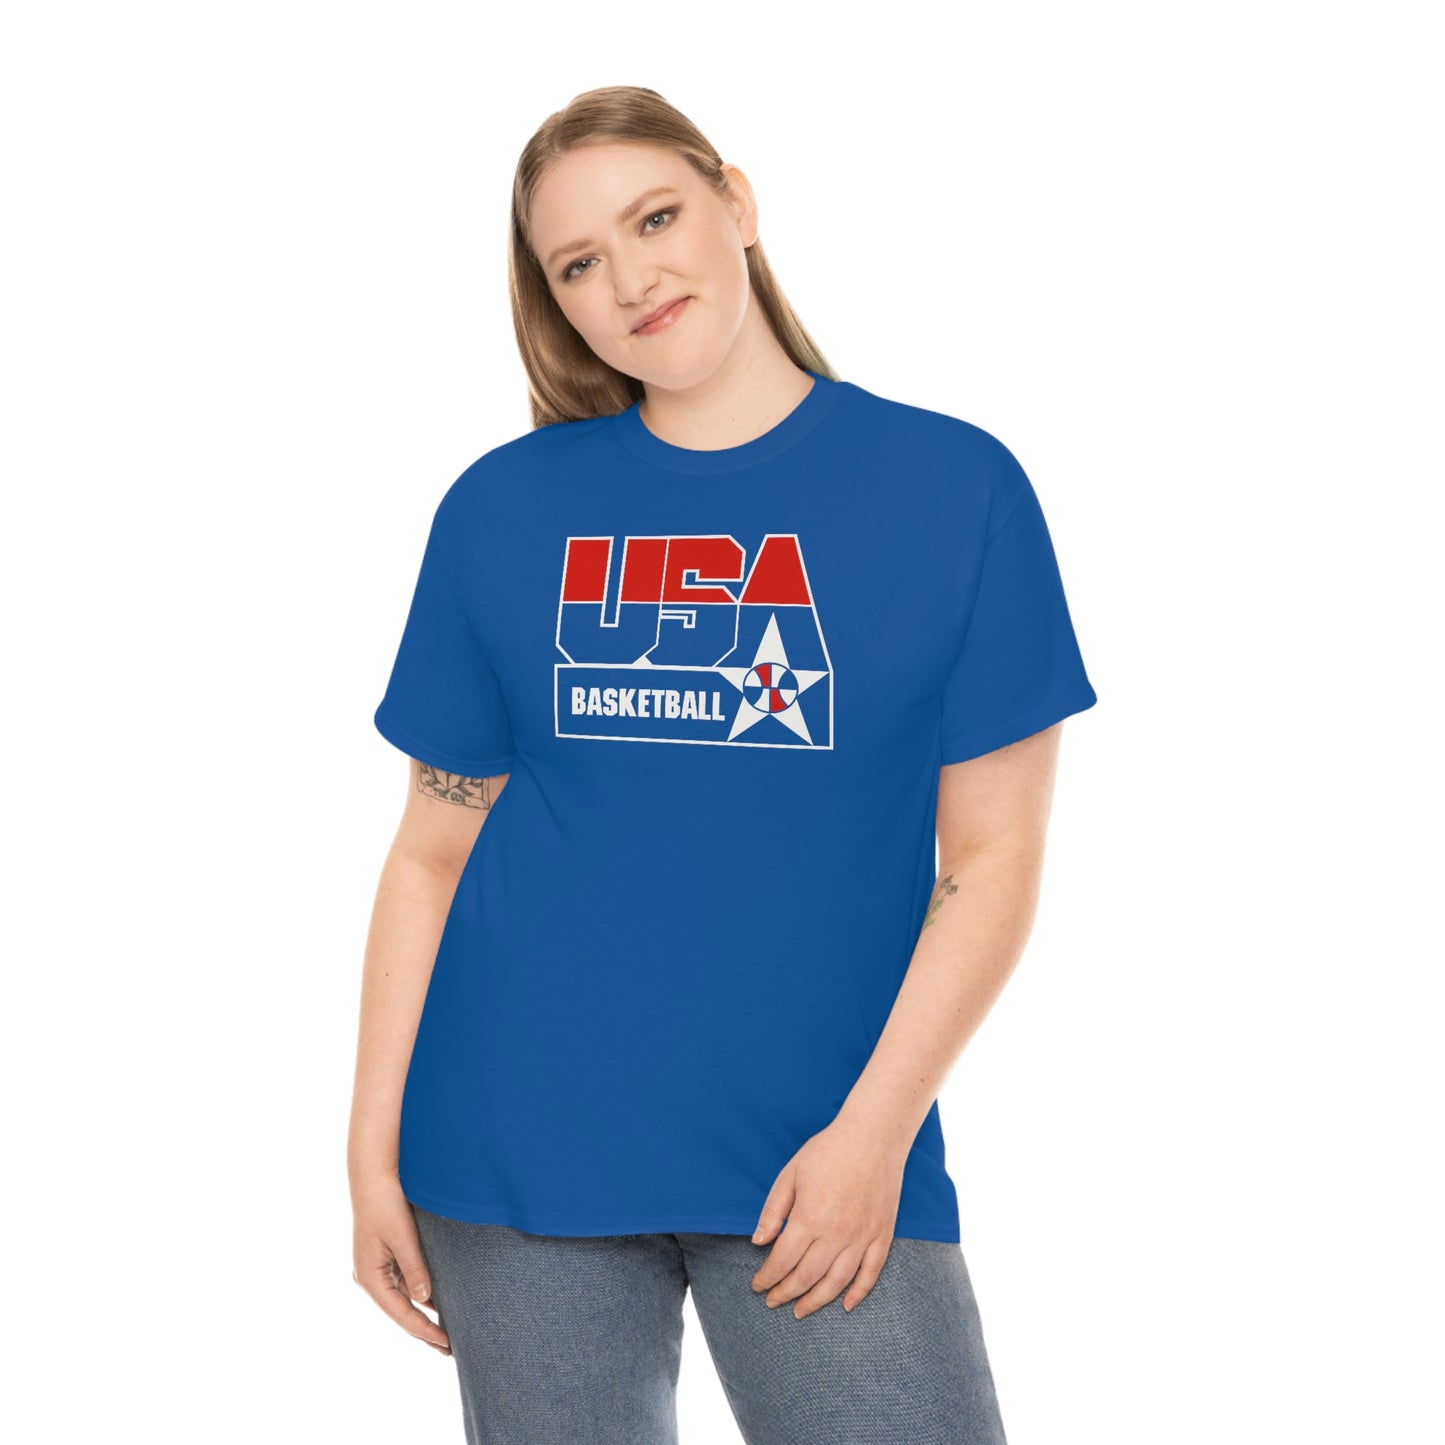 USA 1992 Basketball T-Shirt